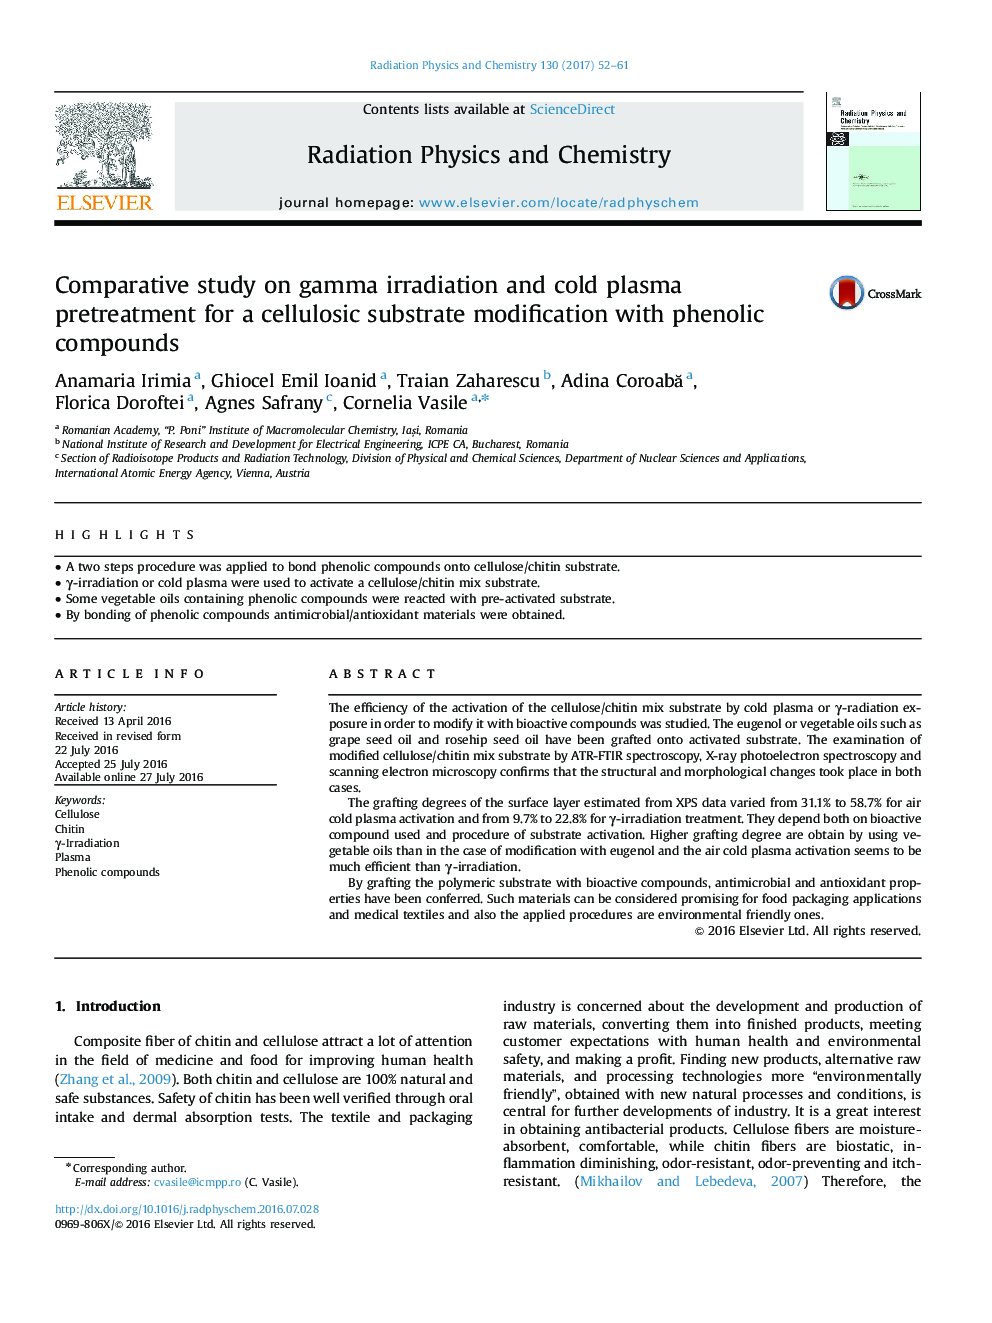 بررسی مقایسه ای در مورد تابش گاما و پیش پیشگیری از پلاسمای سرد برای اصلاح بستر سلولزی با ترکیبات فنلی